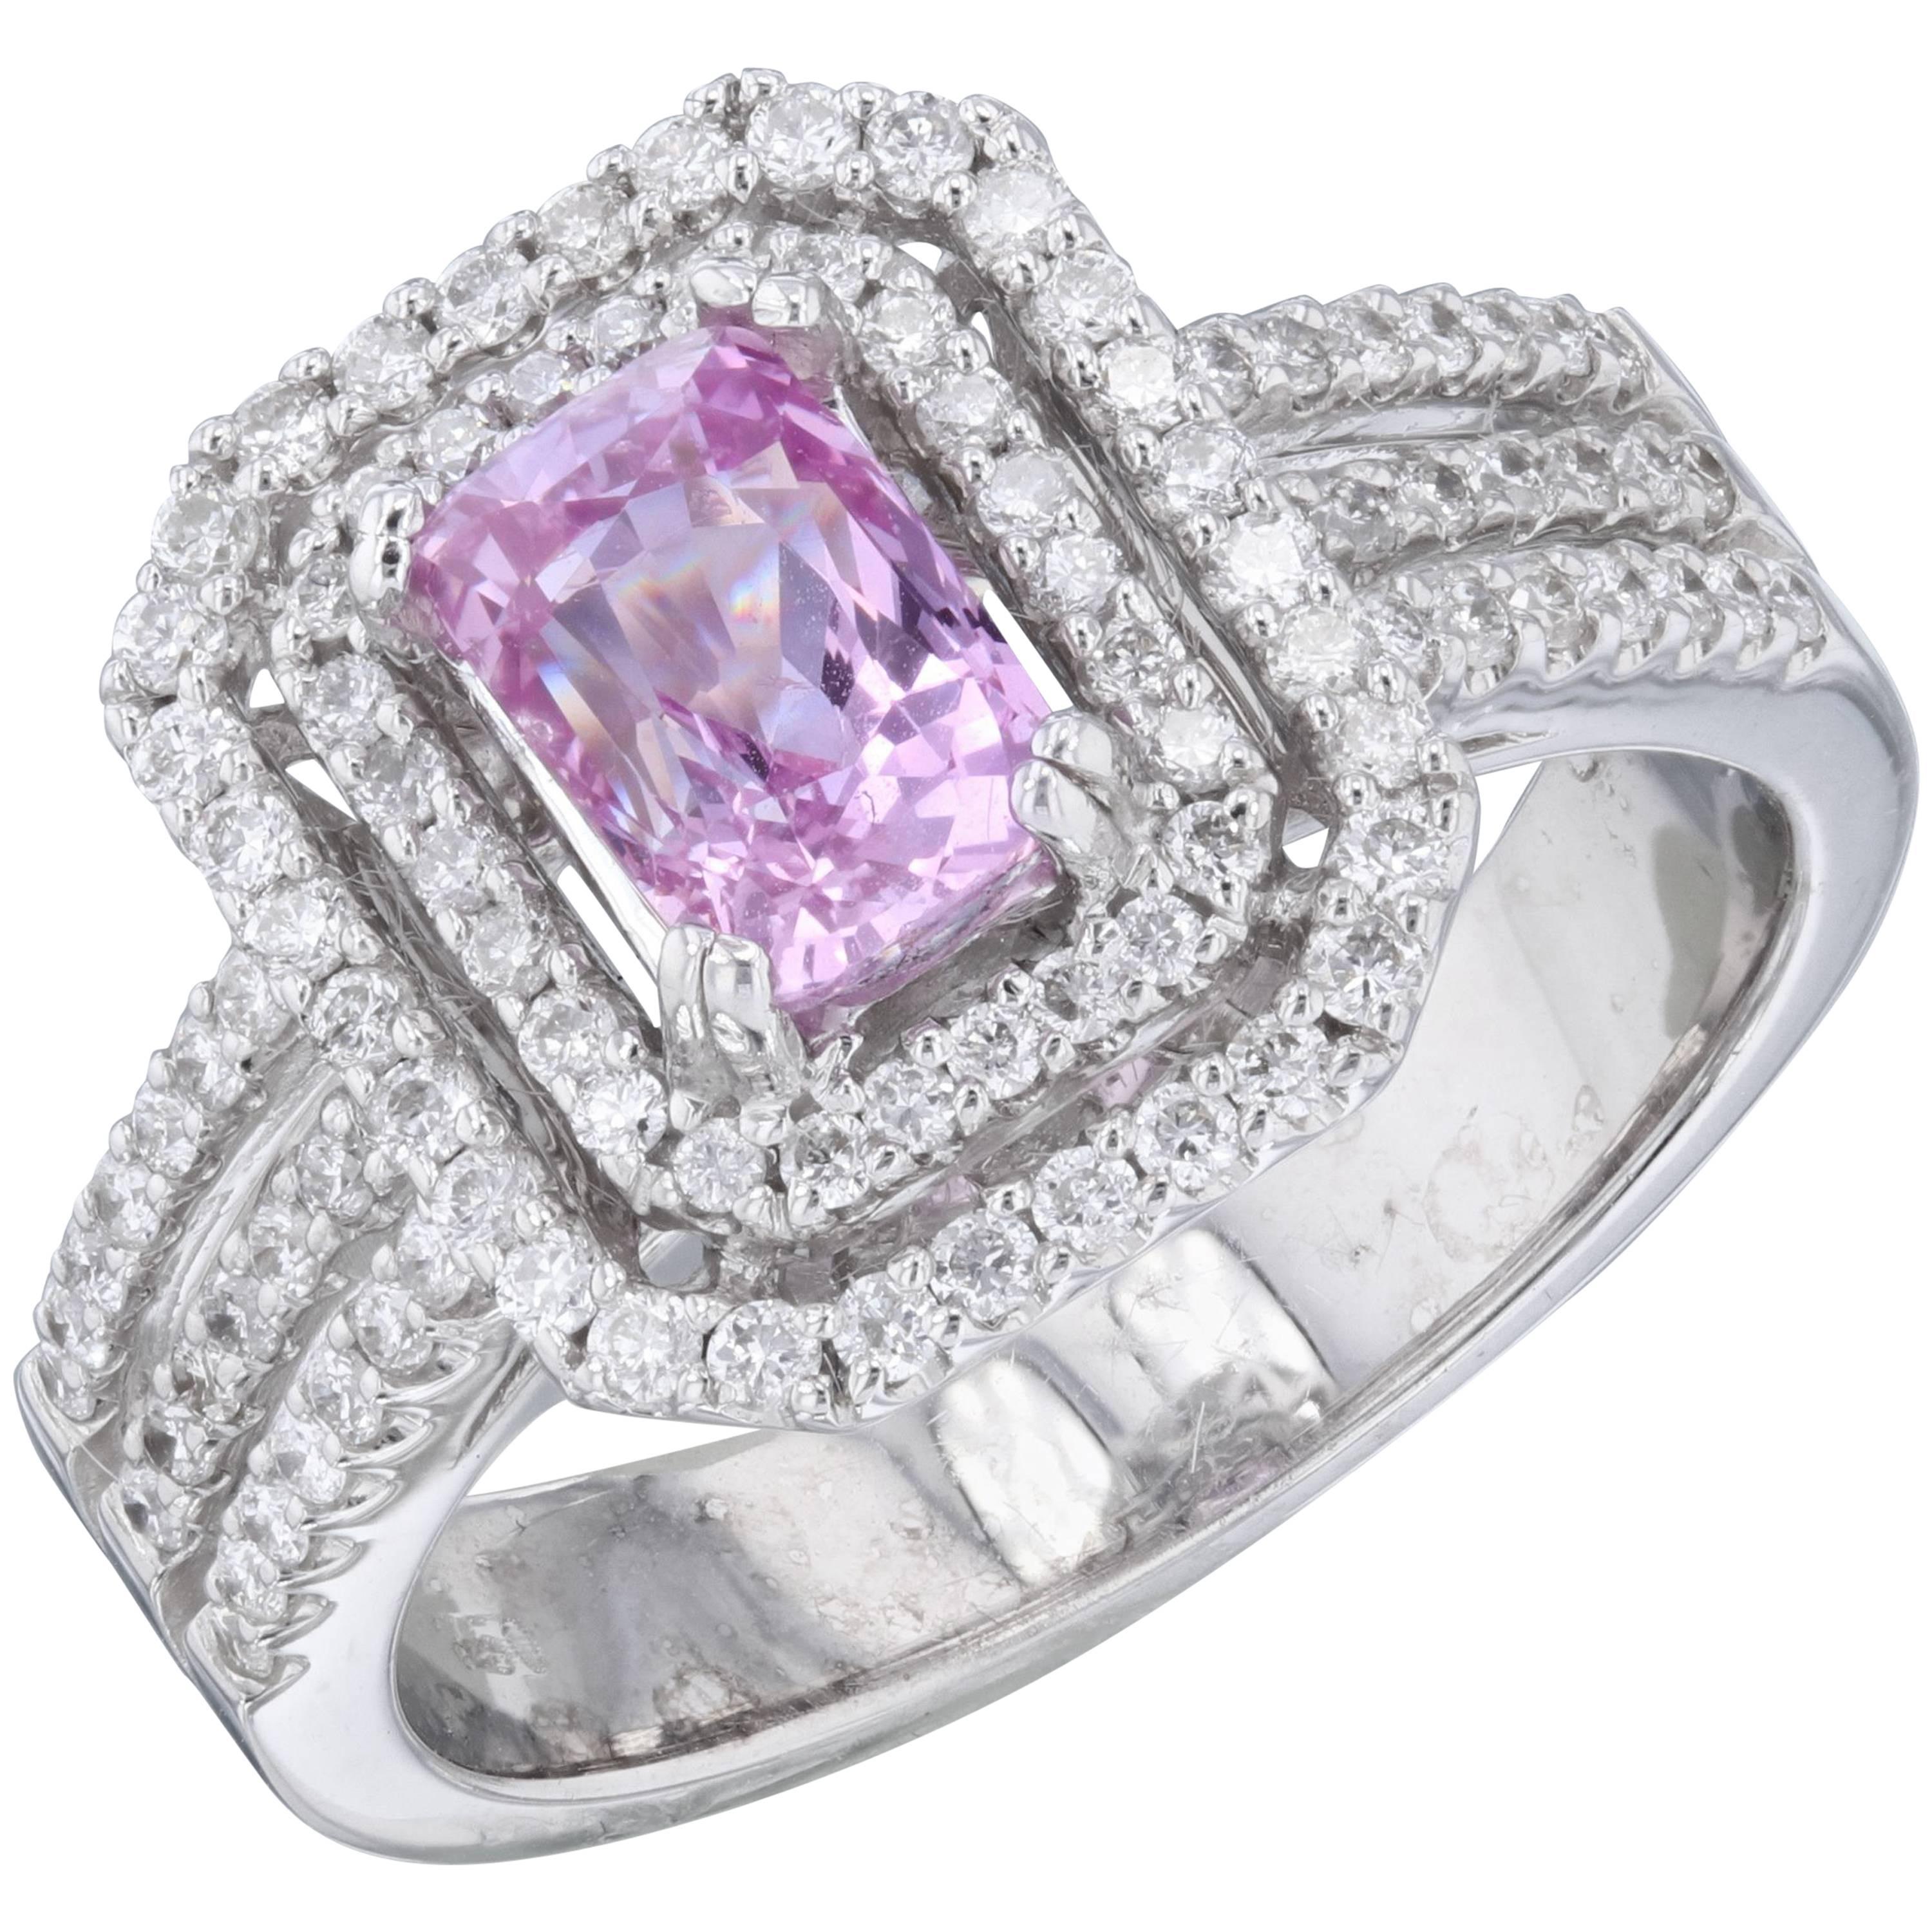 2.16 Carat Pink Sapphire Diamond Ring in 18 Karat White Gold